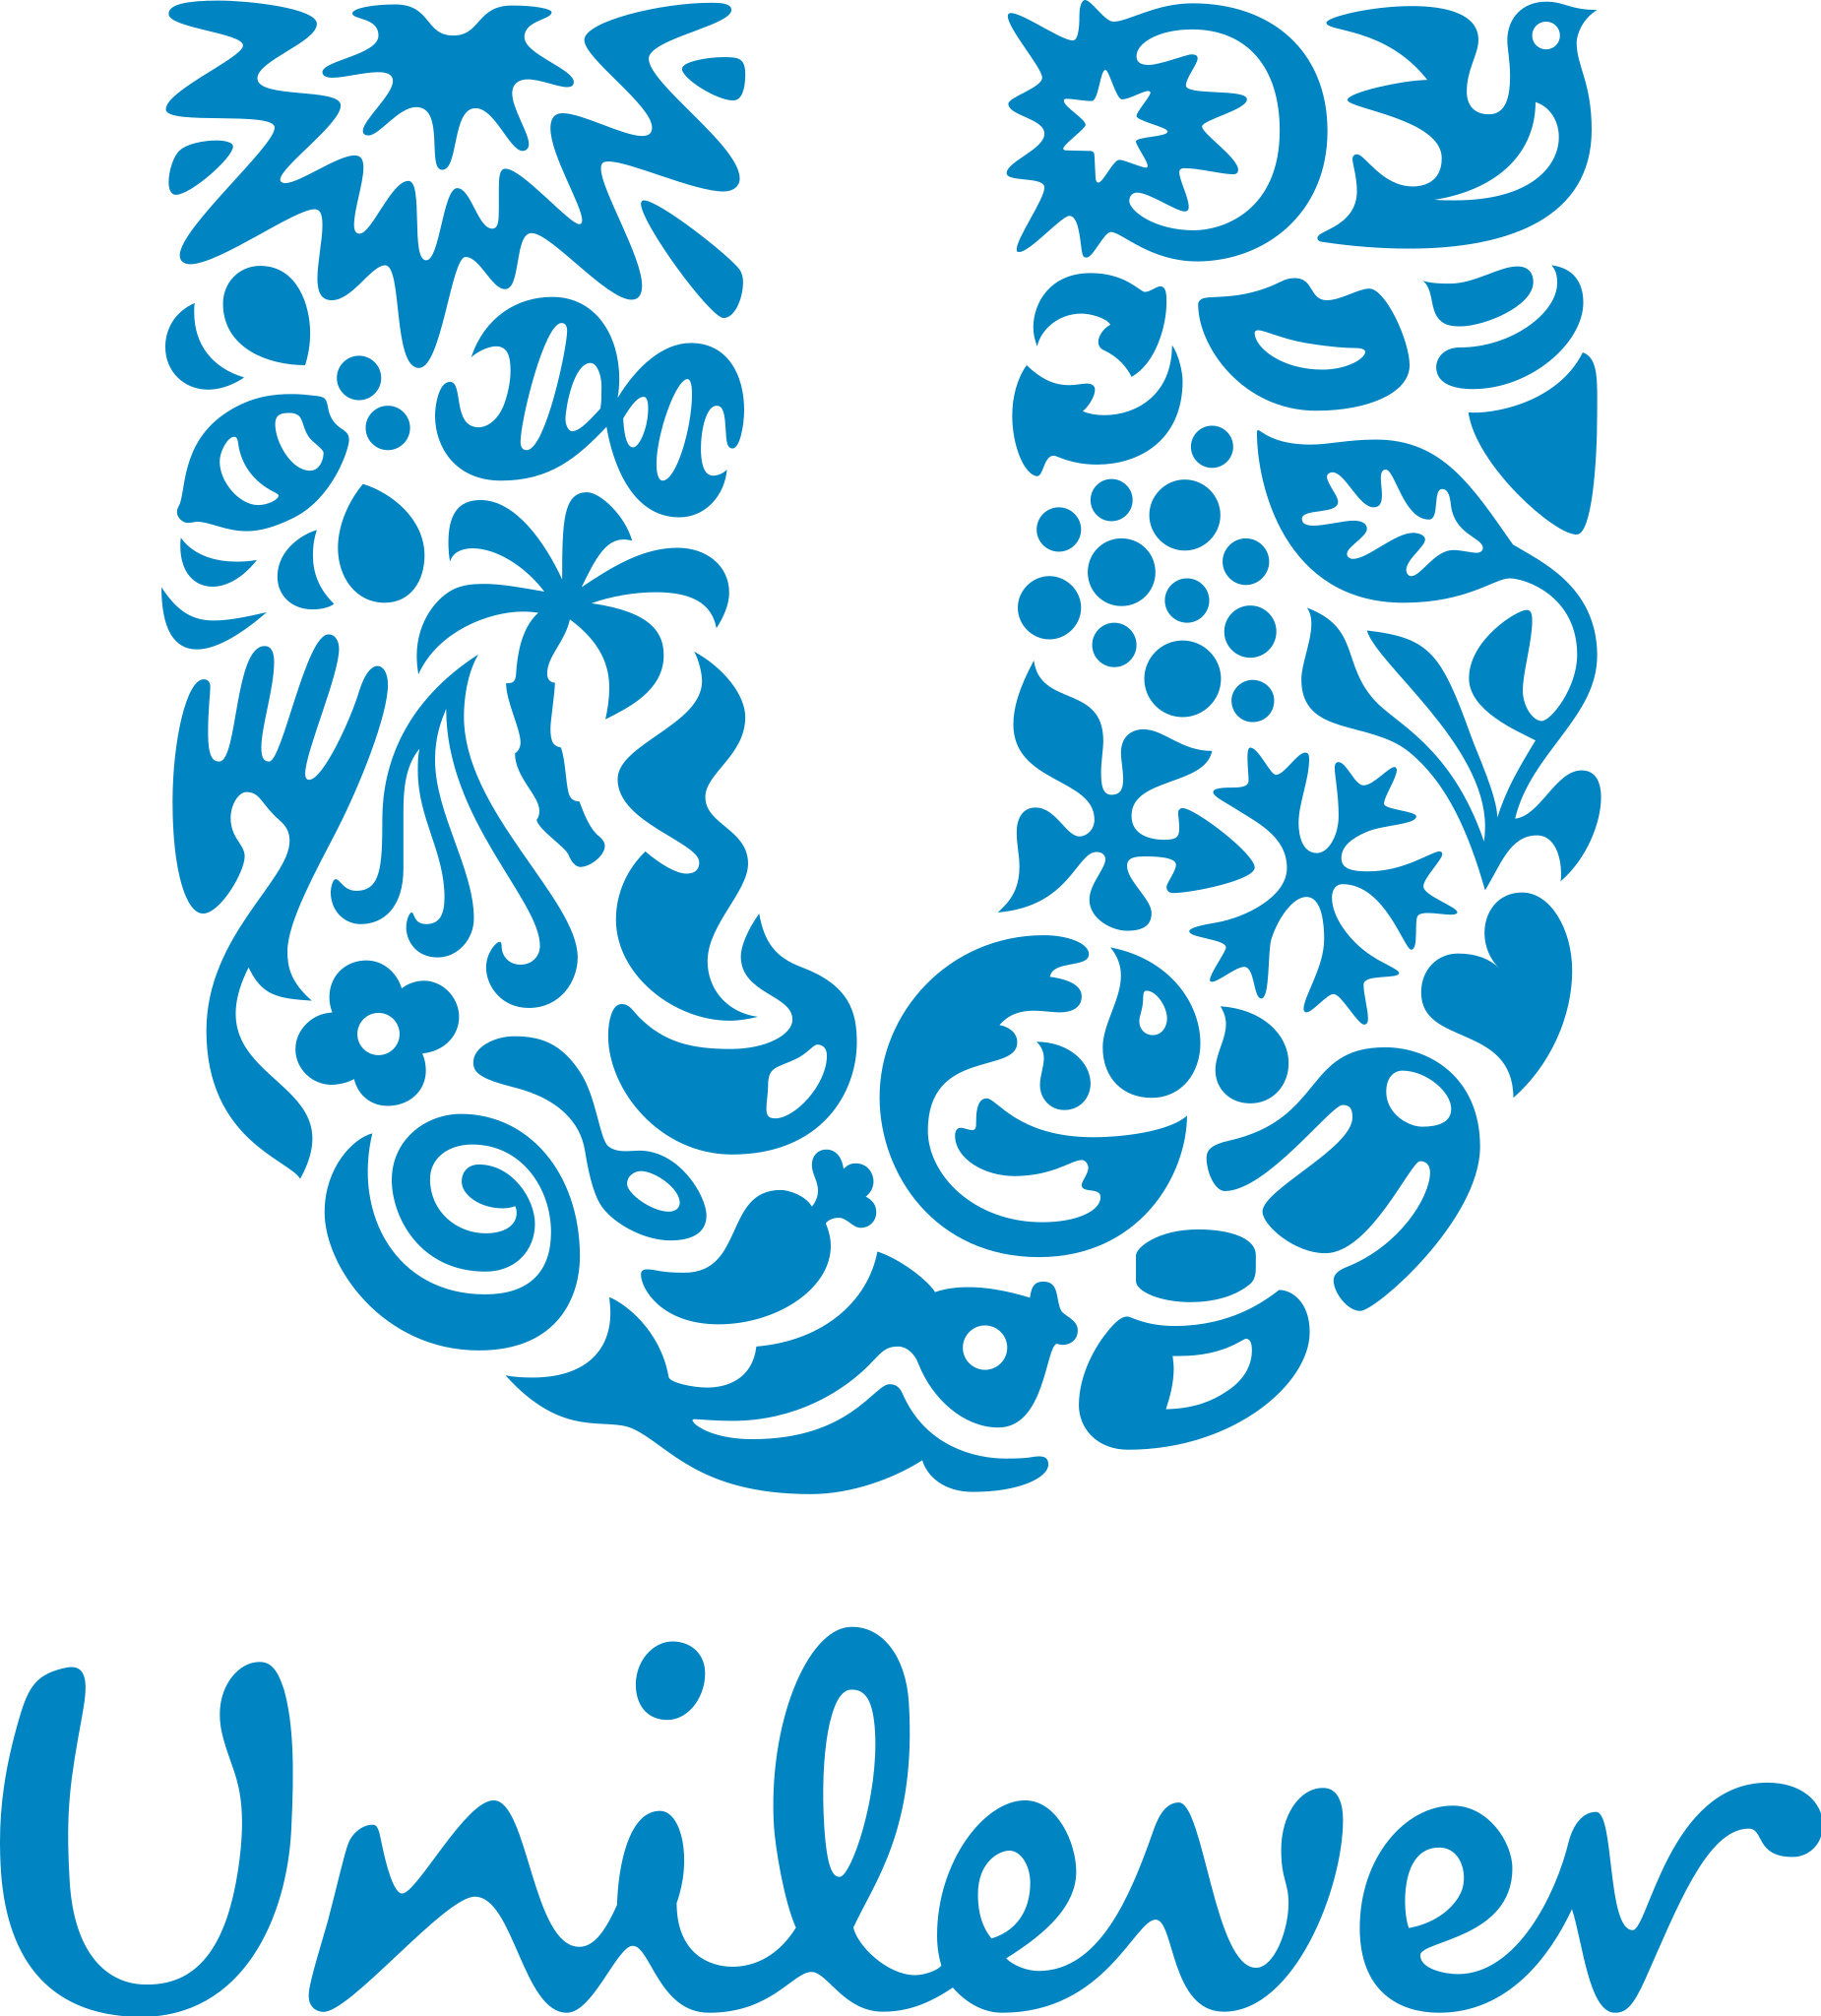 Compre e Ganhe: Cuponeria e Unilever juntas oferecem prêmios exclusivos para aproveitar em casa